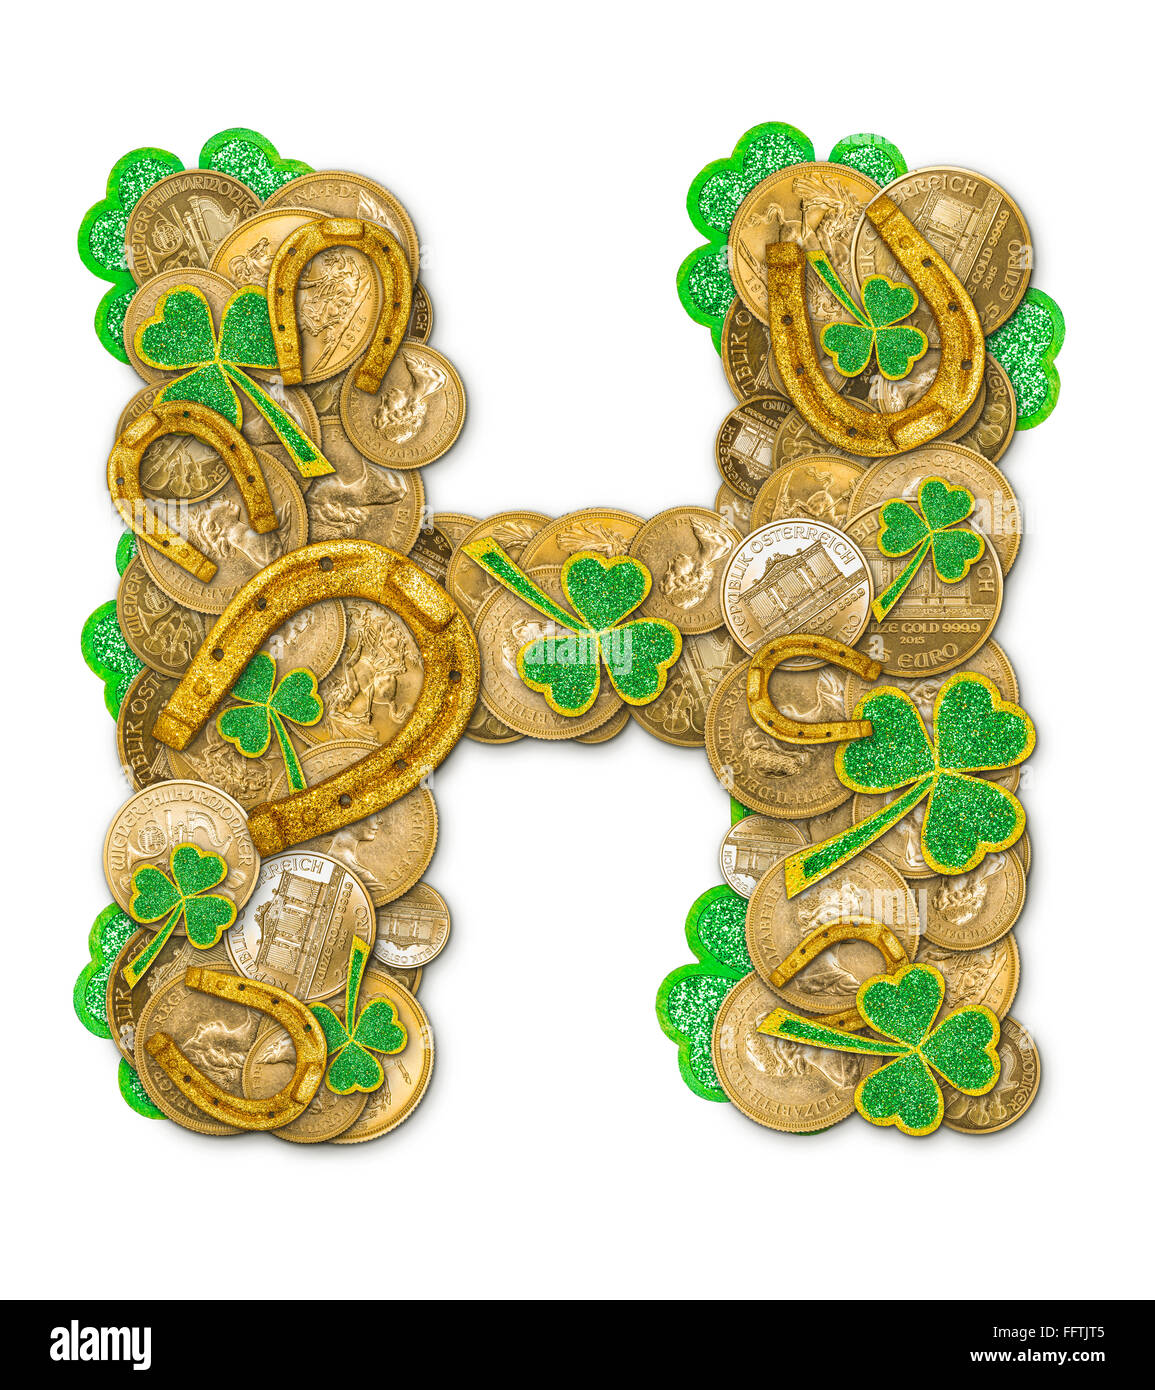 St. Patricks Day Feiertag Buchstabe H gemacht von Münzen, Kleeblätter und Hufeisen Stockfoto